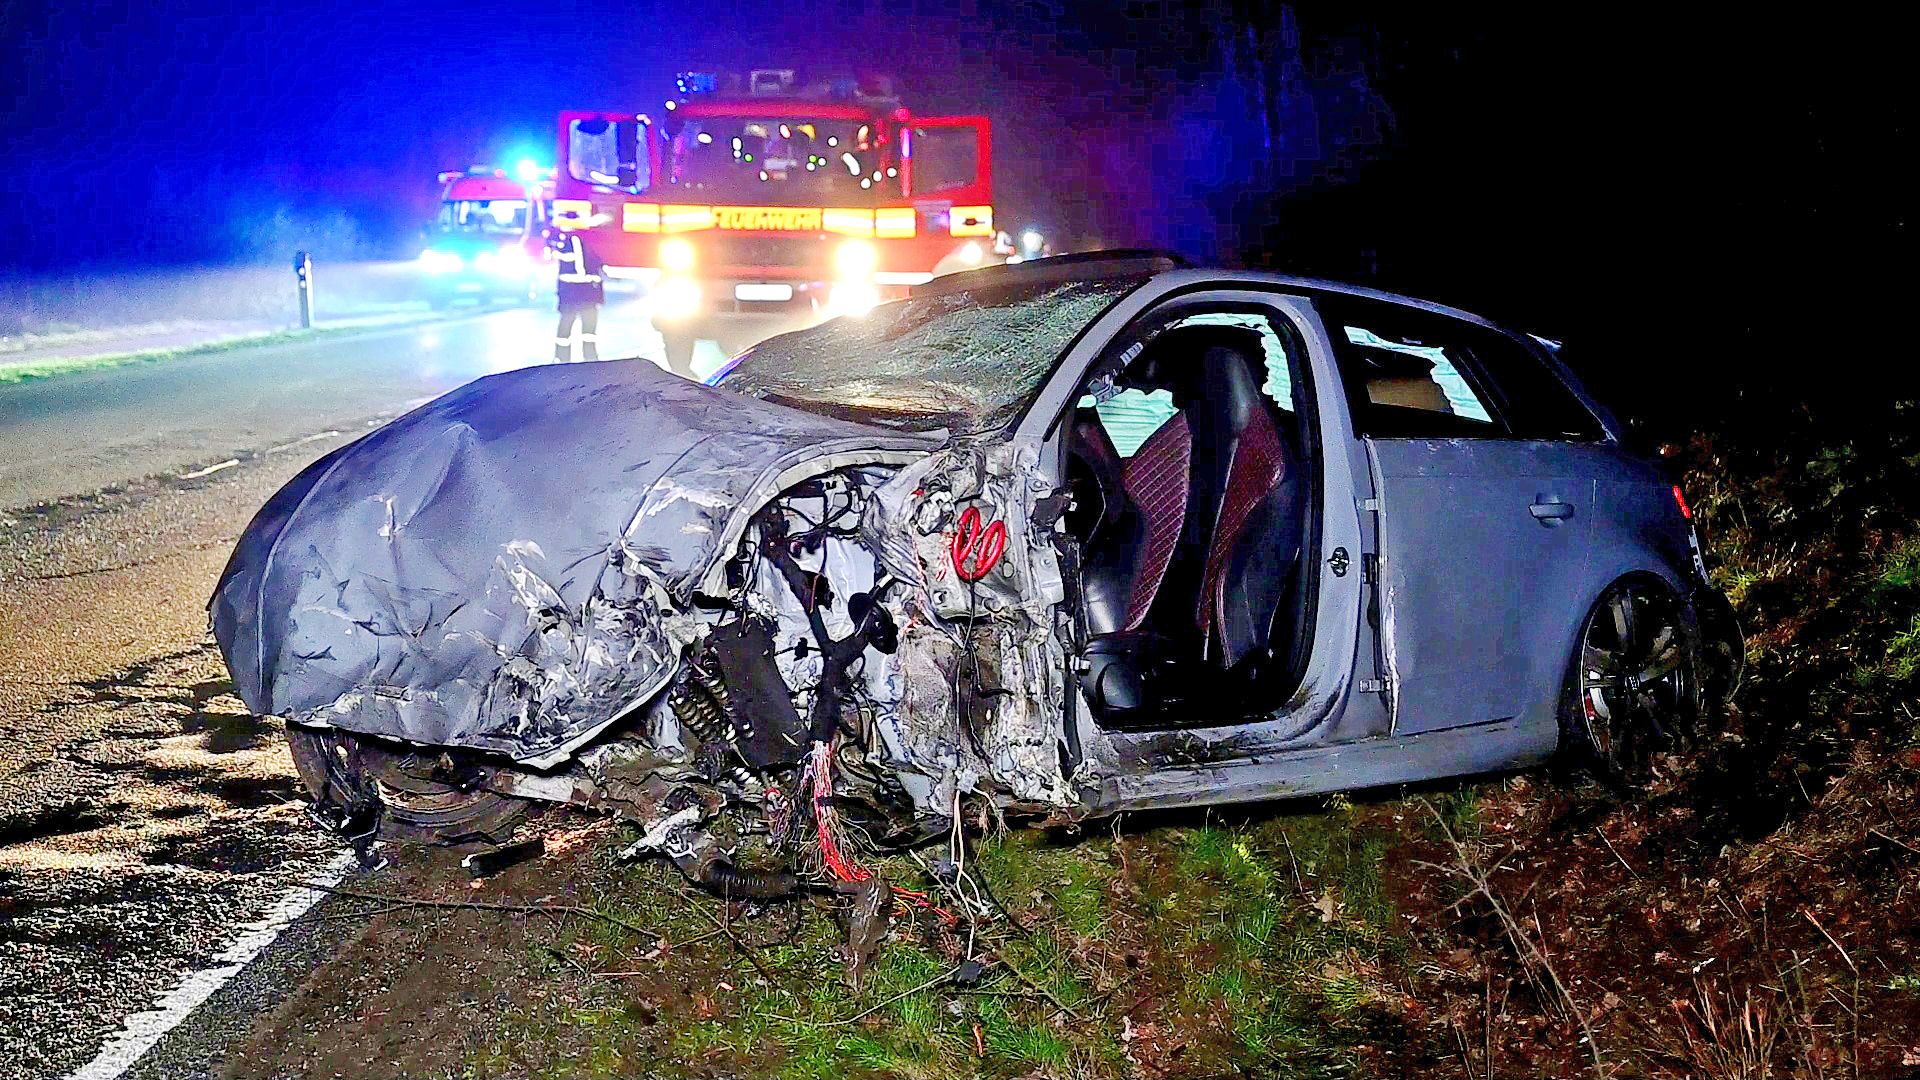 Der Audi RS3 wurde beim Crash komplett zerstört, die Insassen schwer verletzt.